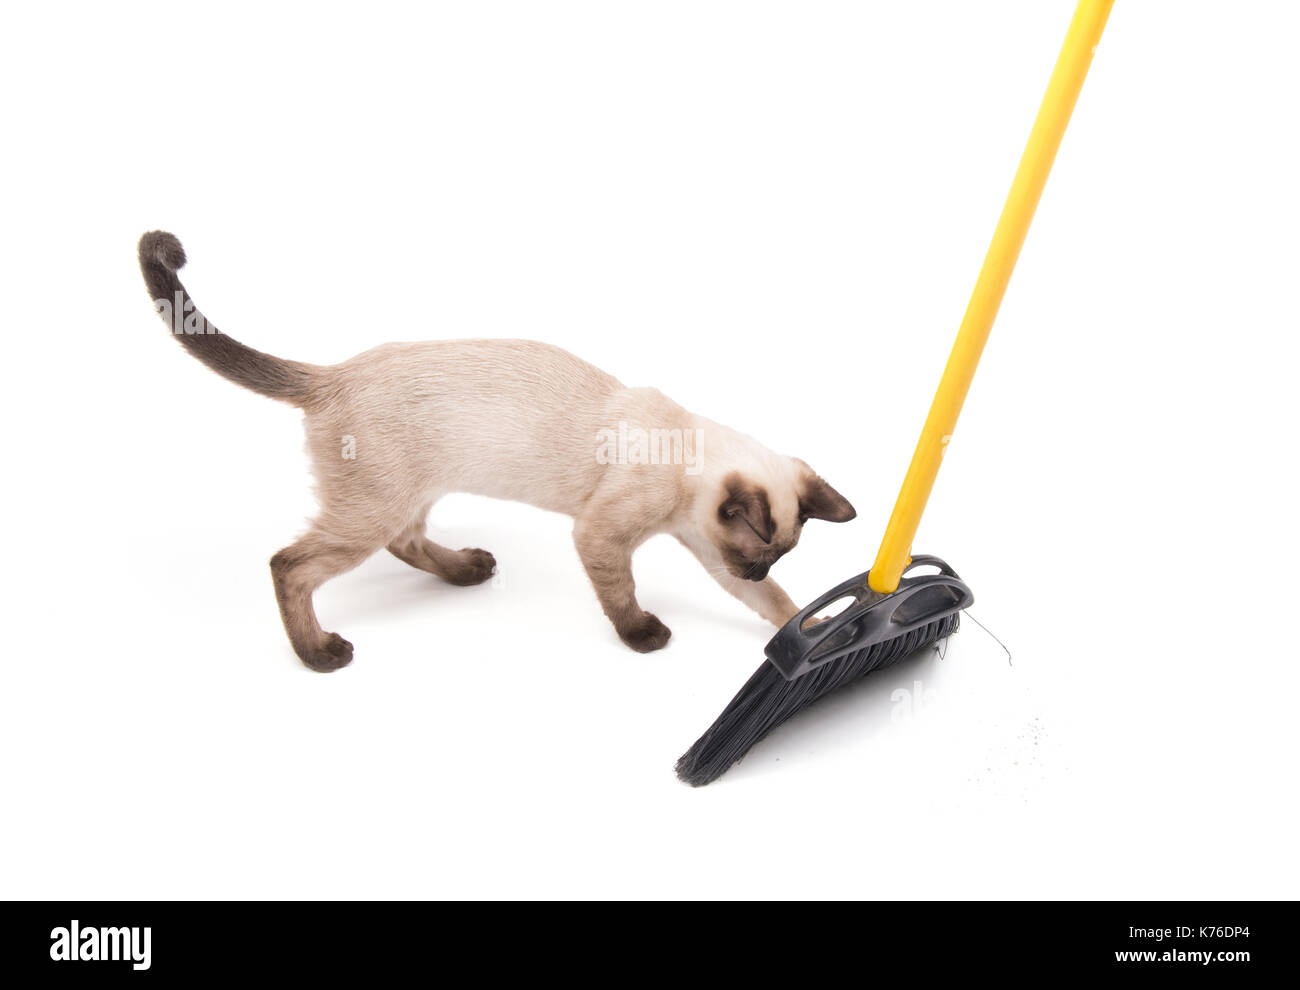 Gatto siamese gatto gioca con una scopa mentre il pavimento viene spazzato, su bianco Foto Stock